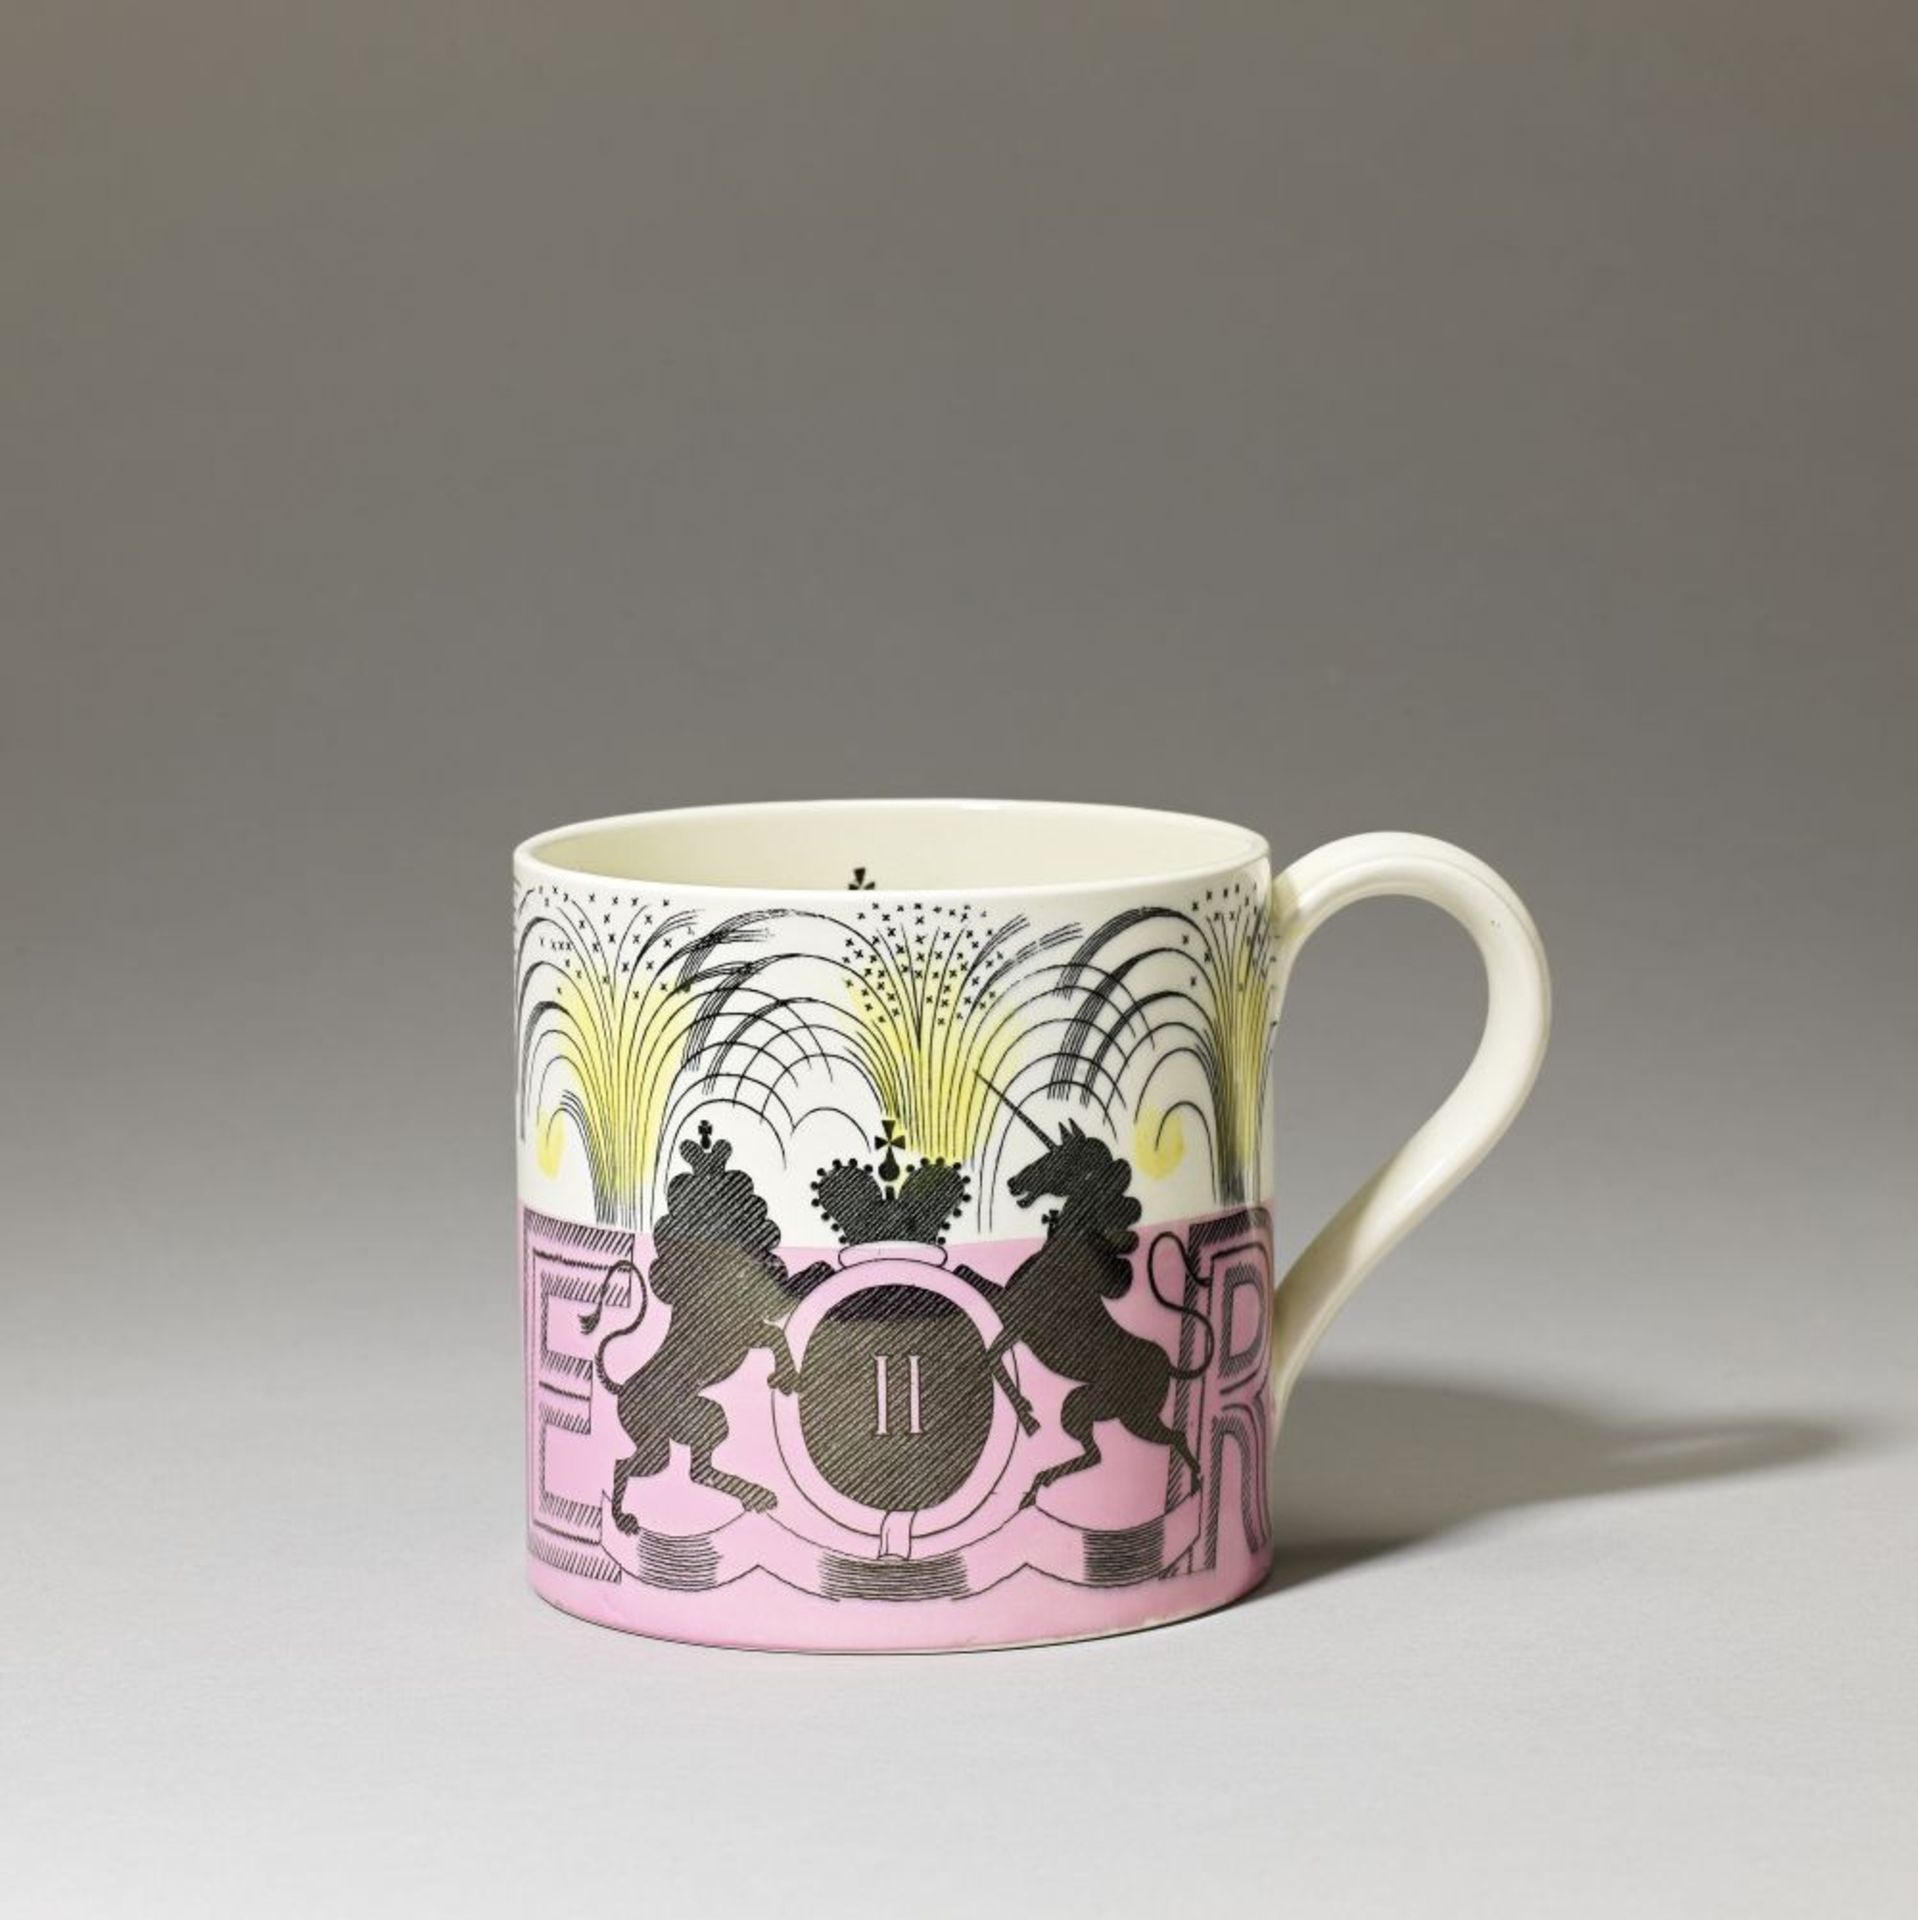 Eric Ravilious 'Coronation' mug, 1953